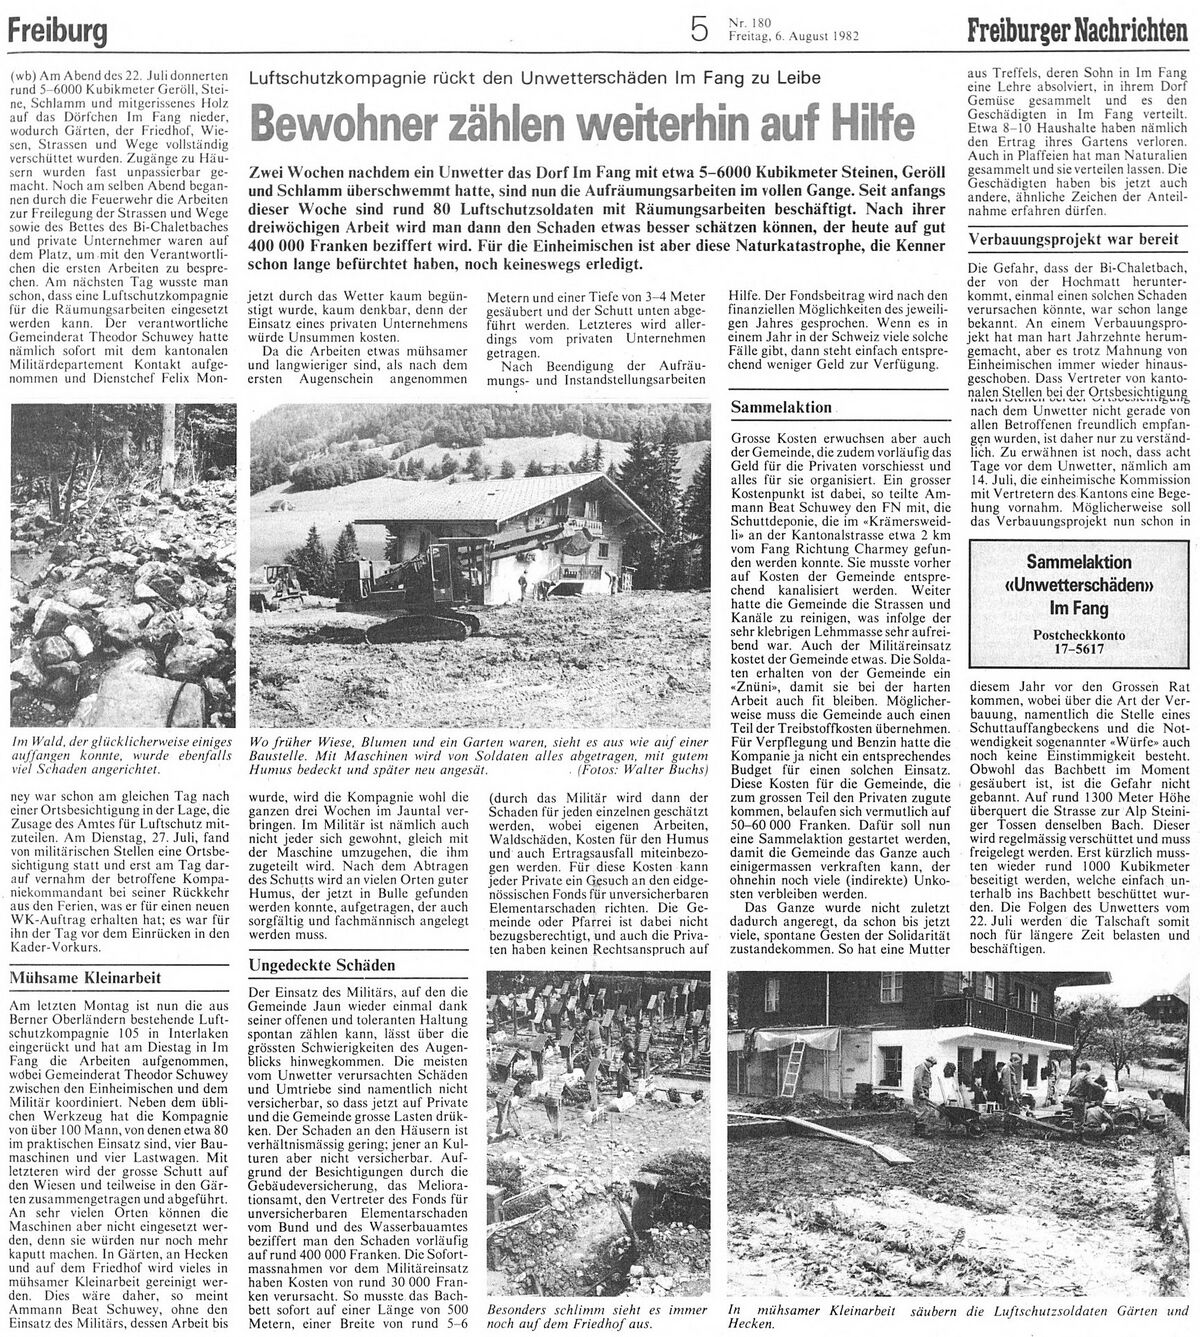 19820722 01 Flood Im Fang FR Freiburger Nachrichten 2 06.08.1982.jpg